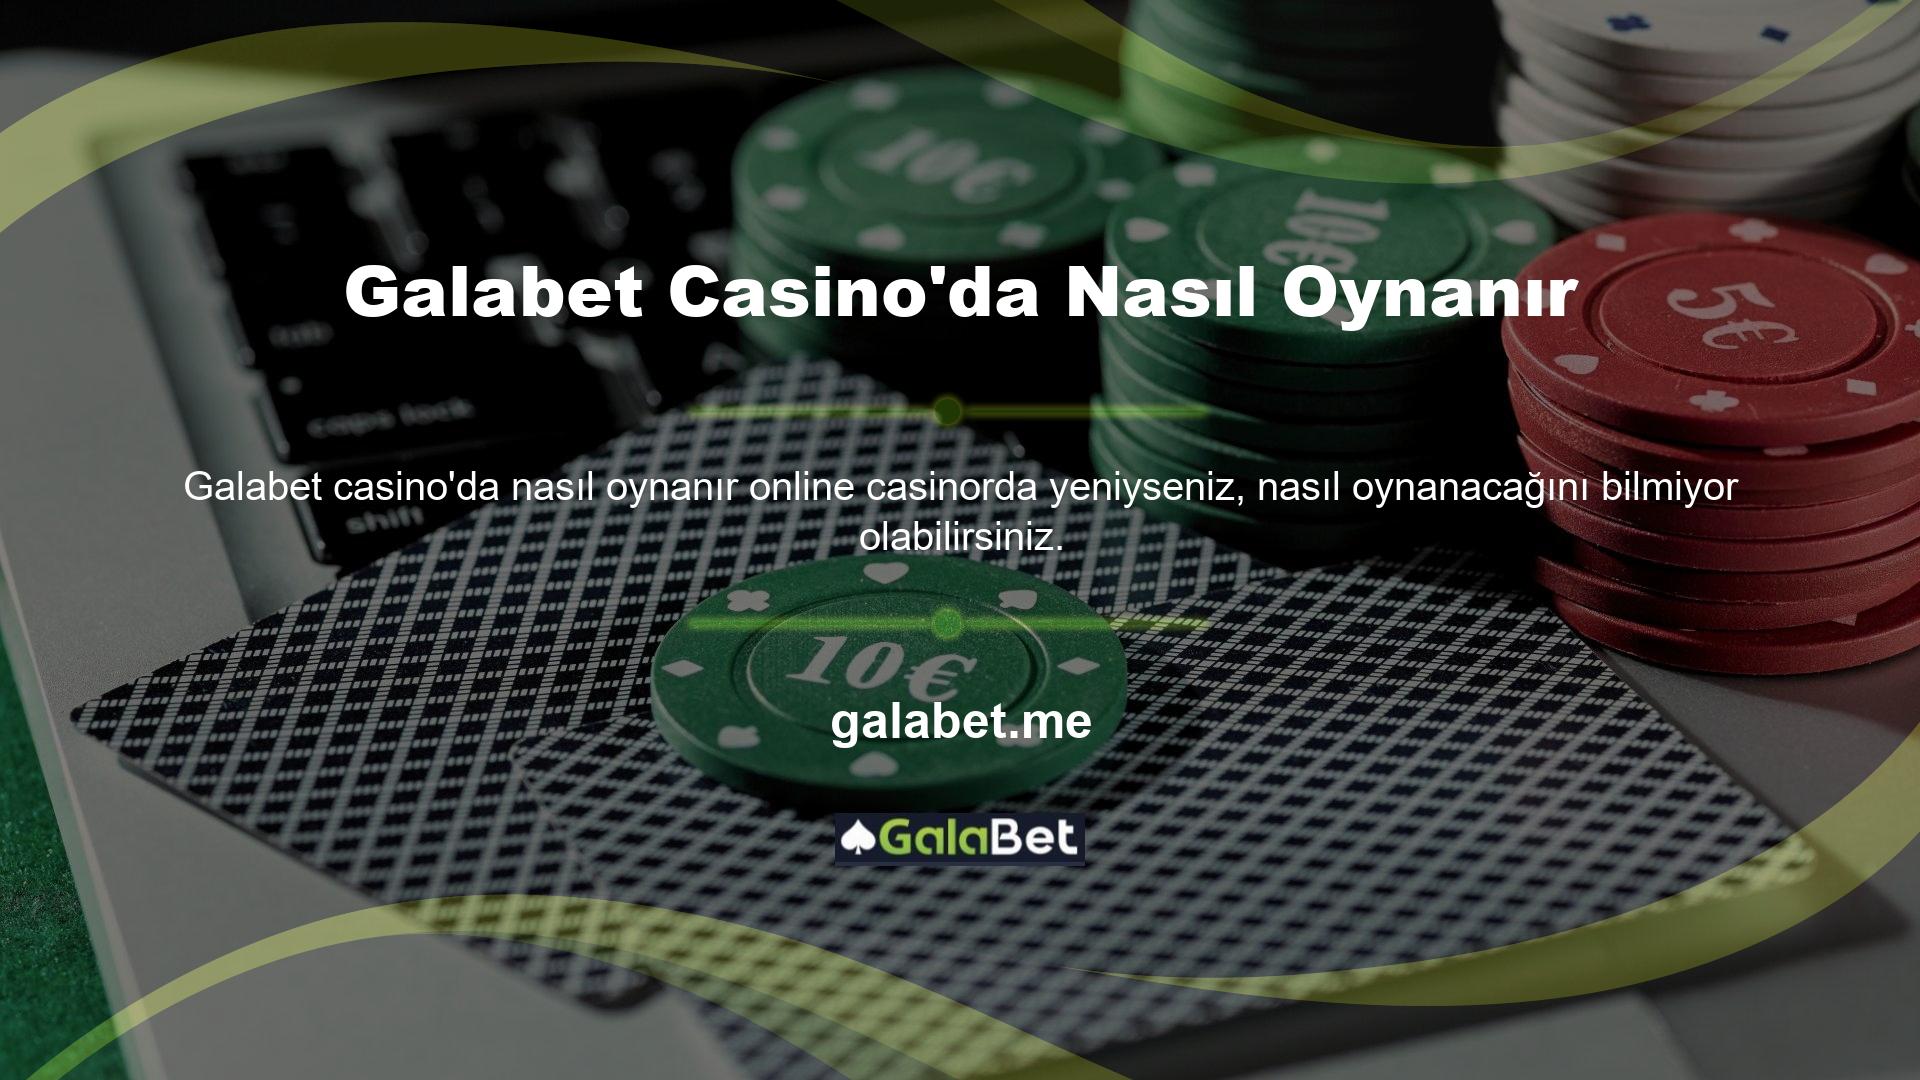 Galabet Casino'da Nasıl Oynanır Galabet web sitesinde casino oyunları oynamak isteyen herkesin öncelikle sitenin güncel giriş adresiyle üye oluşturması ve bu oyunu oynarken hesabına giriş yapması gerekmektedir